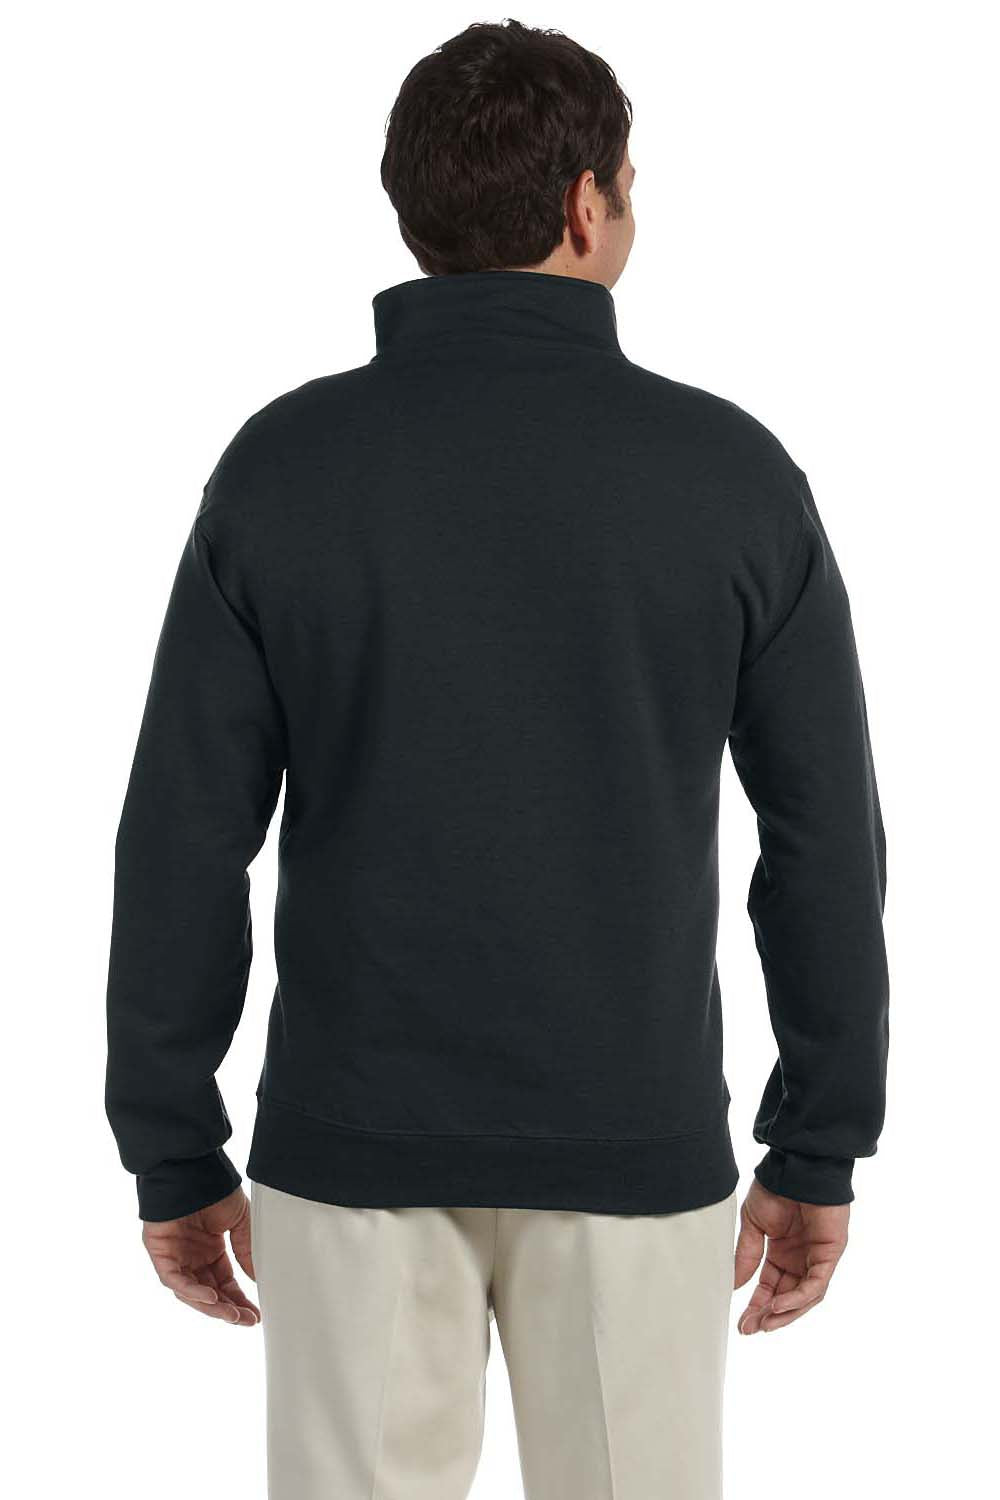 Jerzees 4528 Mens Super Sweats NuBlend Fleece 1/4 Zip Sweatshirt Black Back